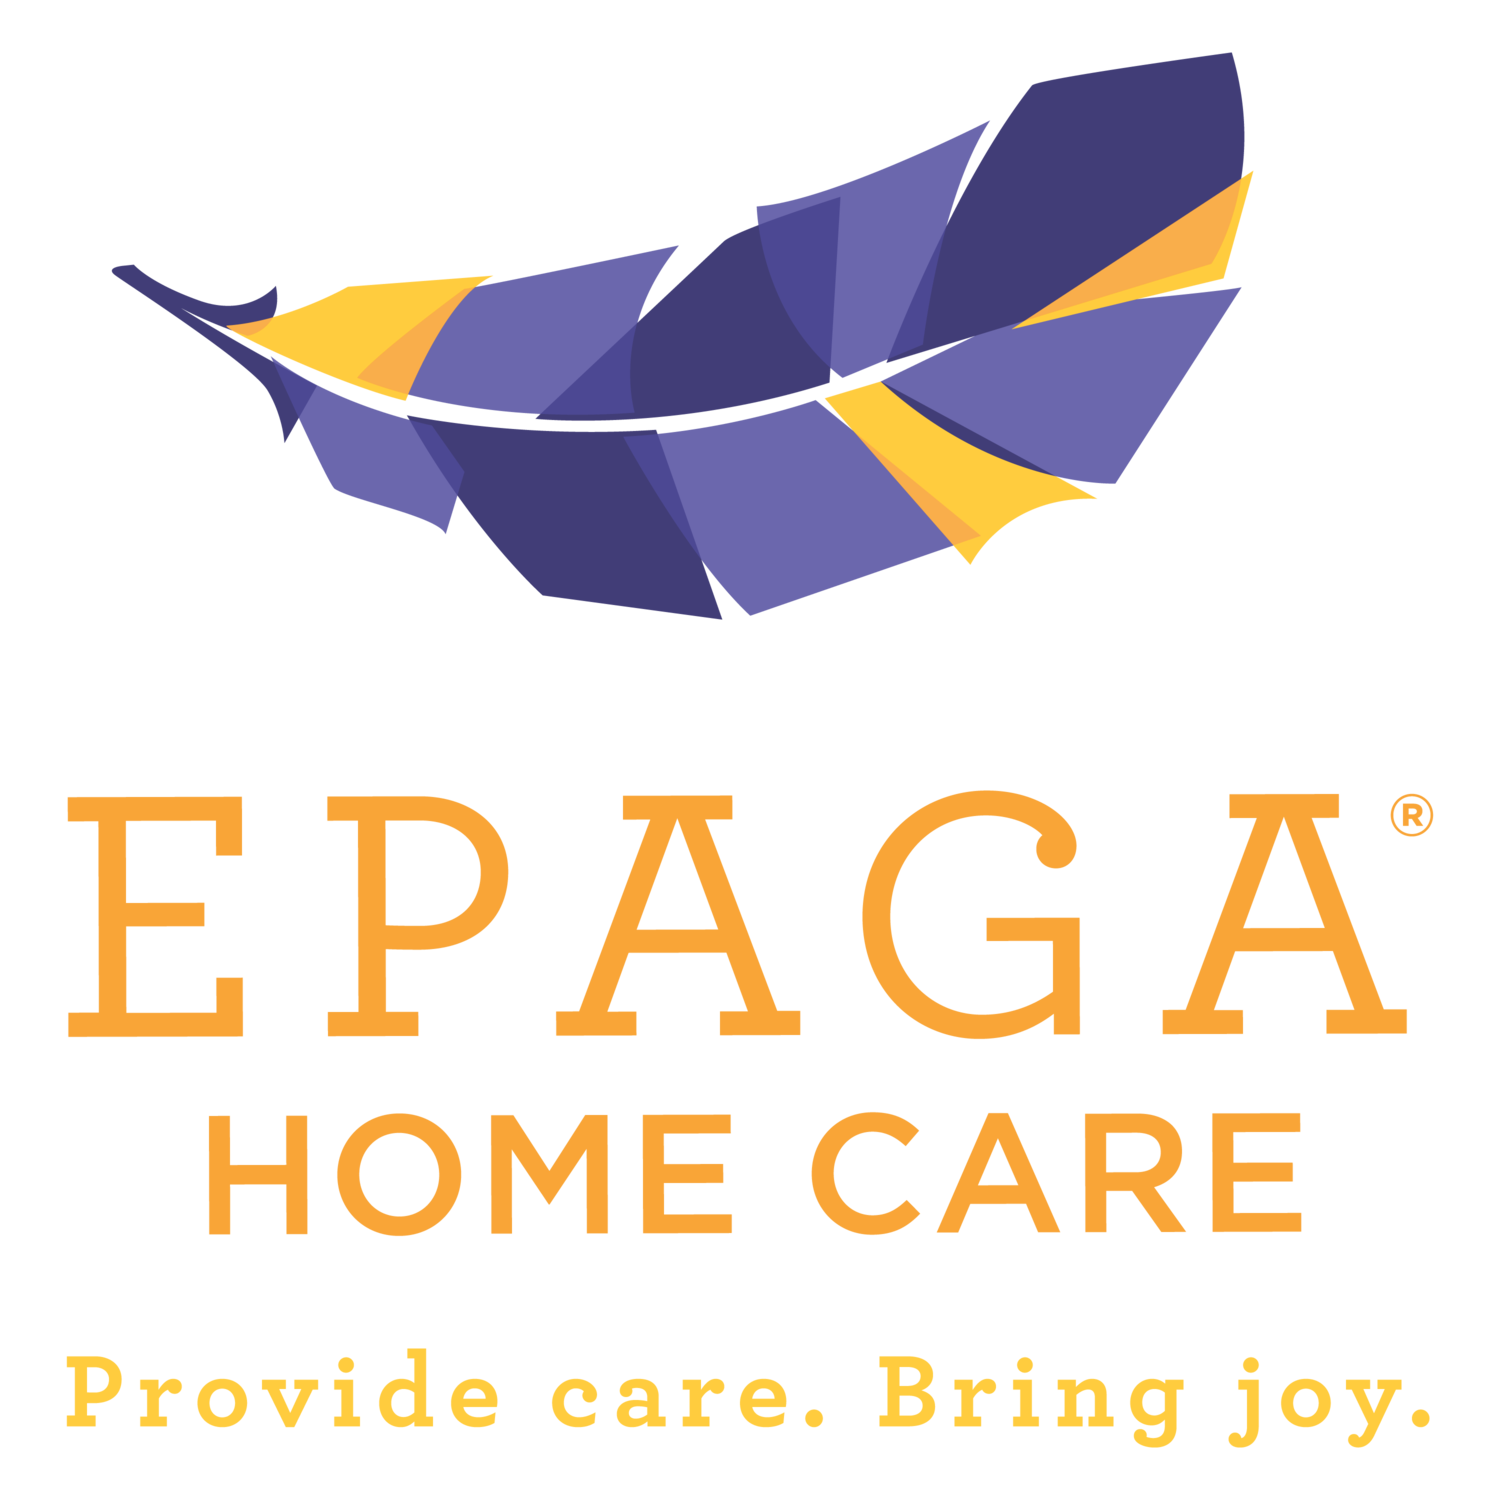 EPAGA HOME CARE